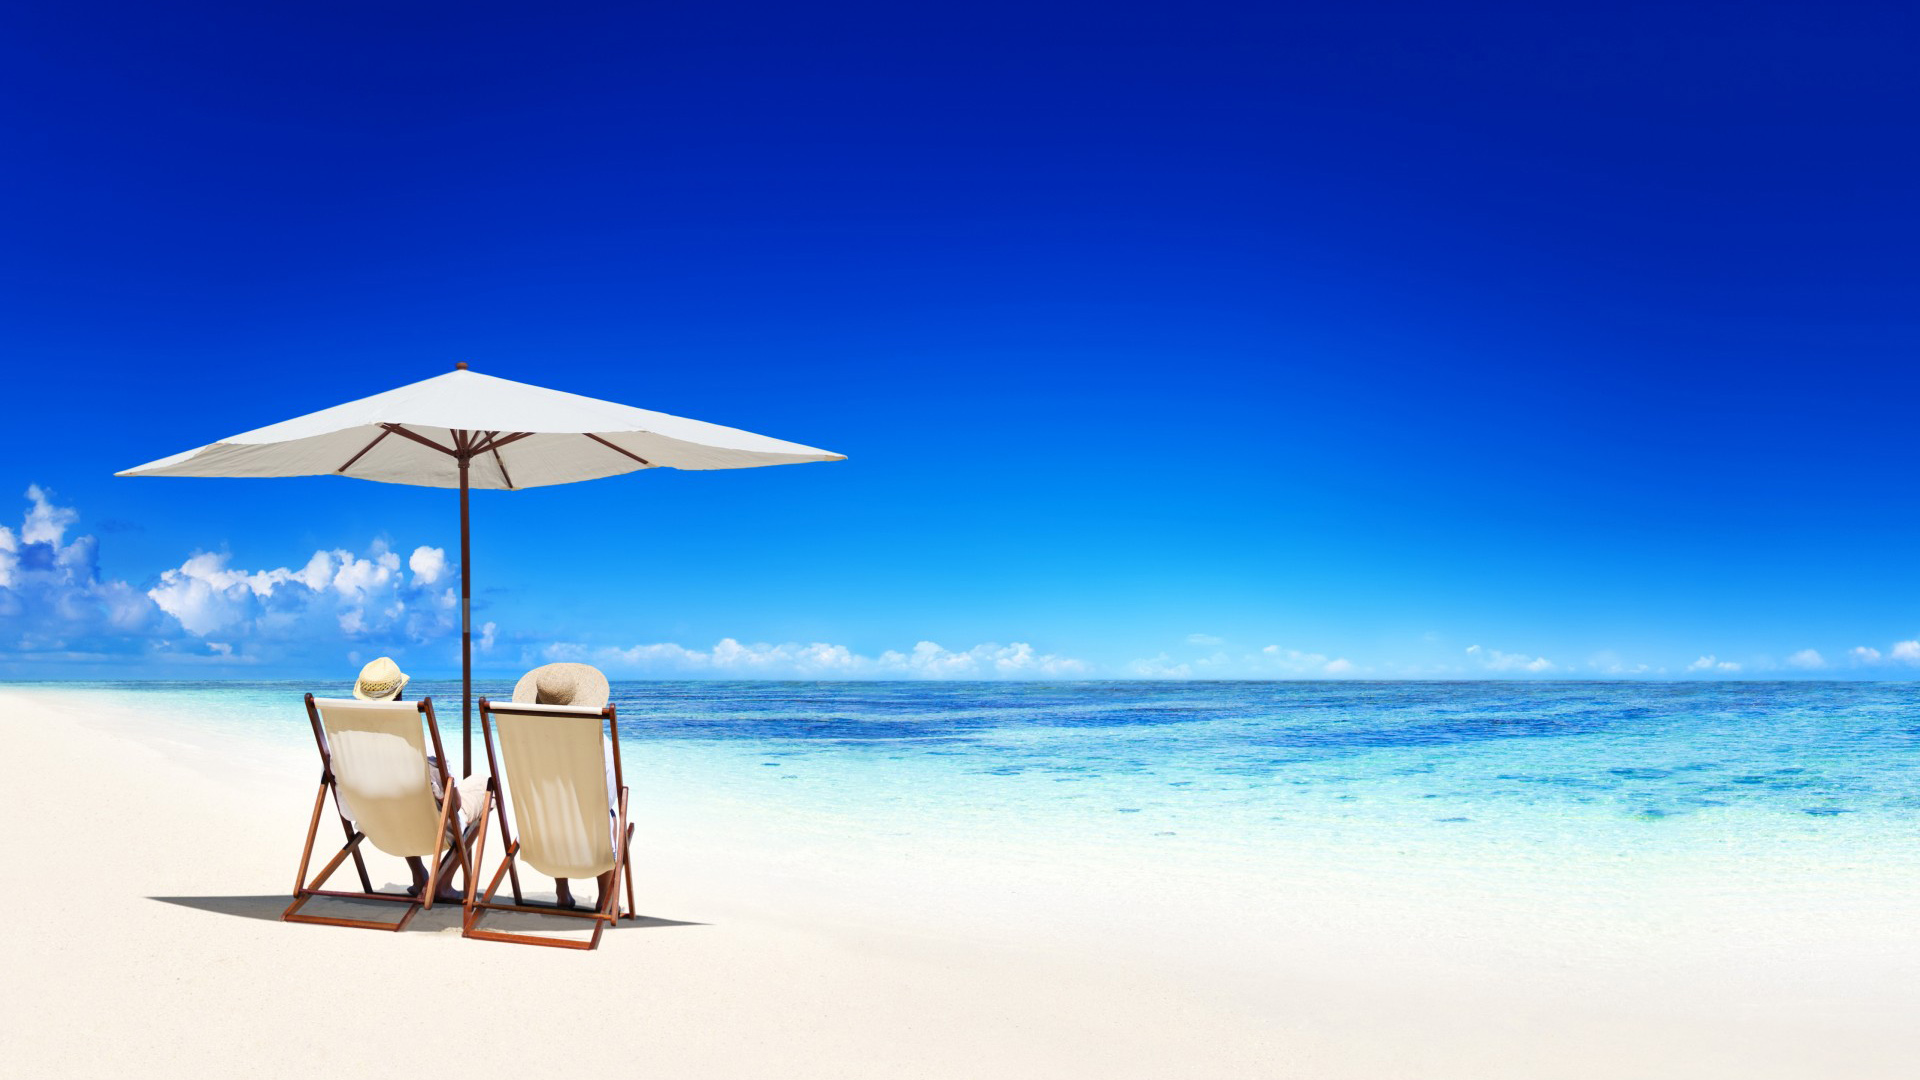 热带，天堂，沙滩，海岸，伞，椅子，海，蓝色，翡翠，海洋，夏天，风景桌面壁纸